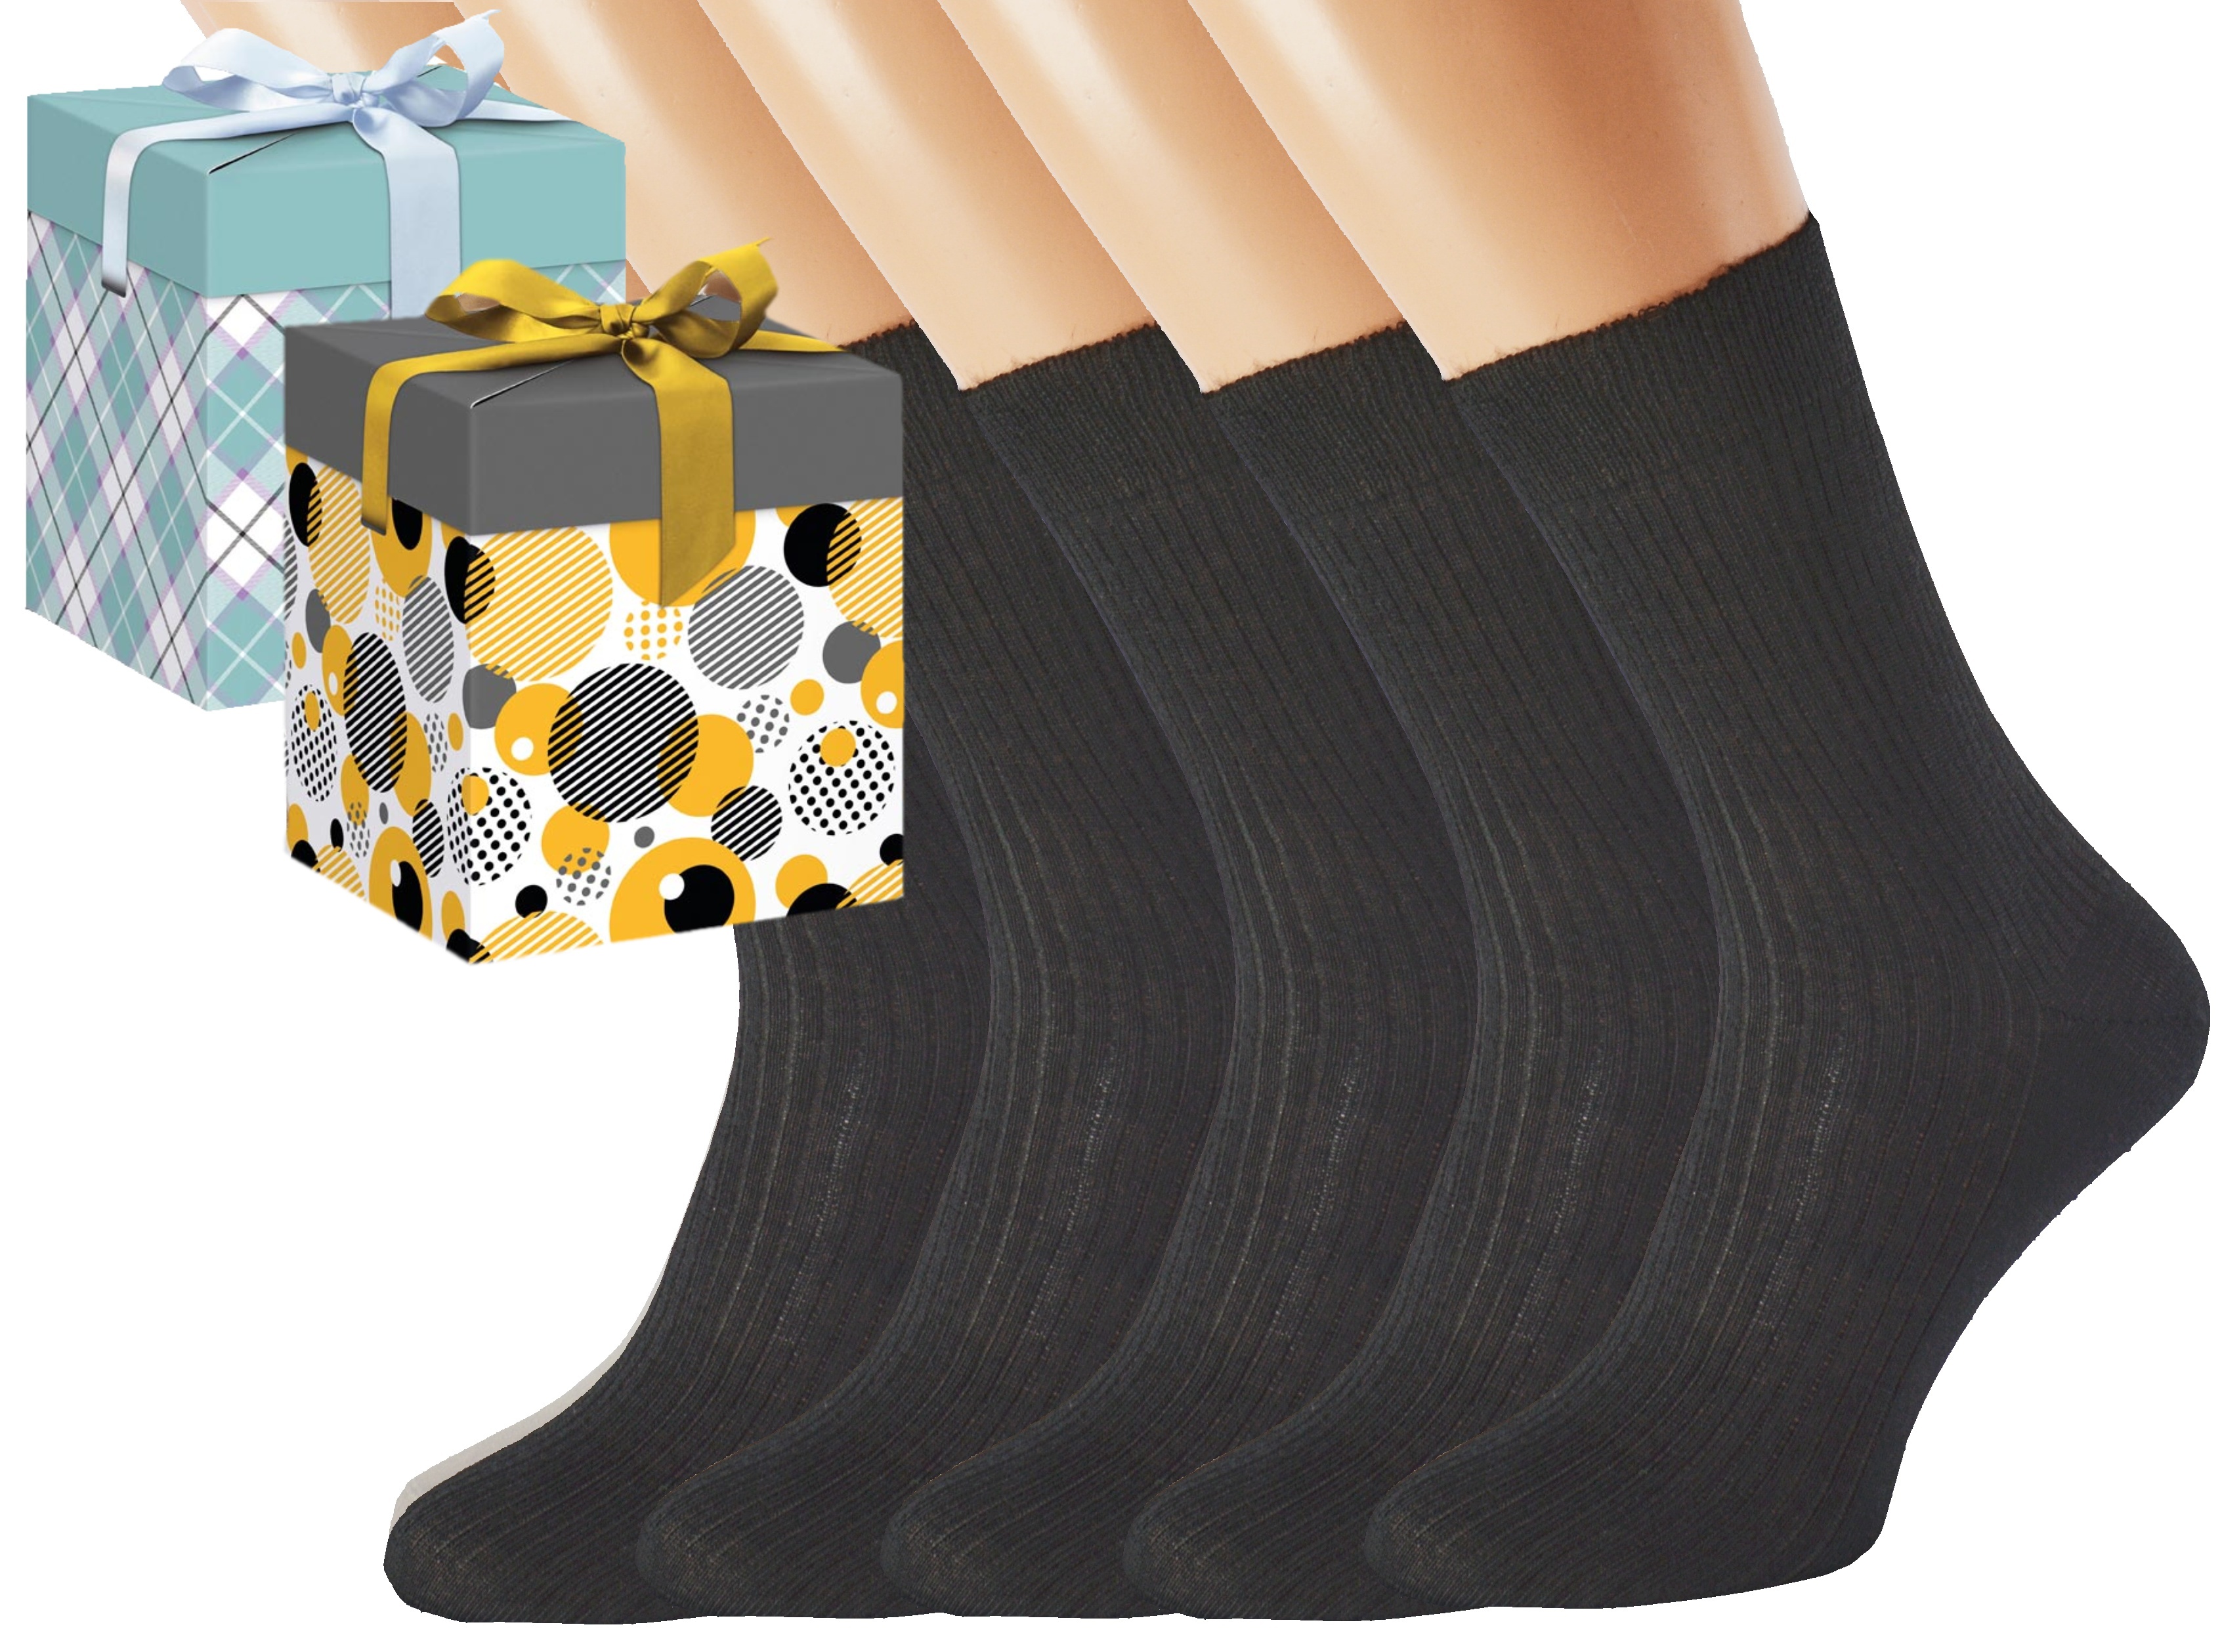 Dárkové balení 5 párů zdravotních ponožek LUKÁŠ Barva: Černé, Velikost: EUR 36-38 (UK 4-5), Zvolte variantu dárkového balení: Mint kostkovaná